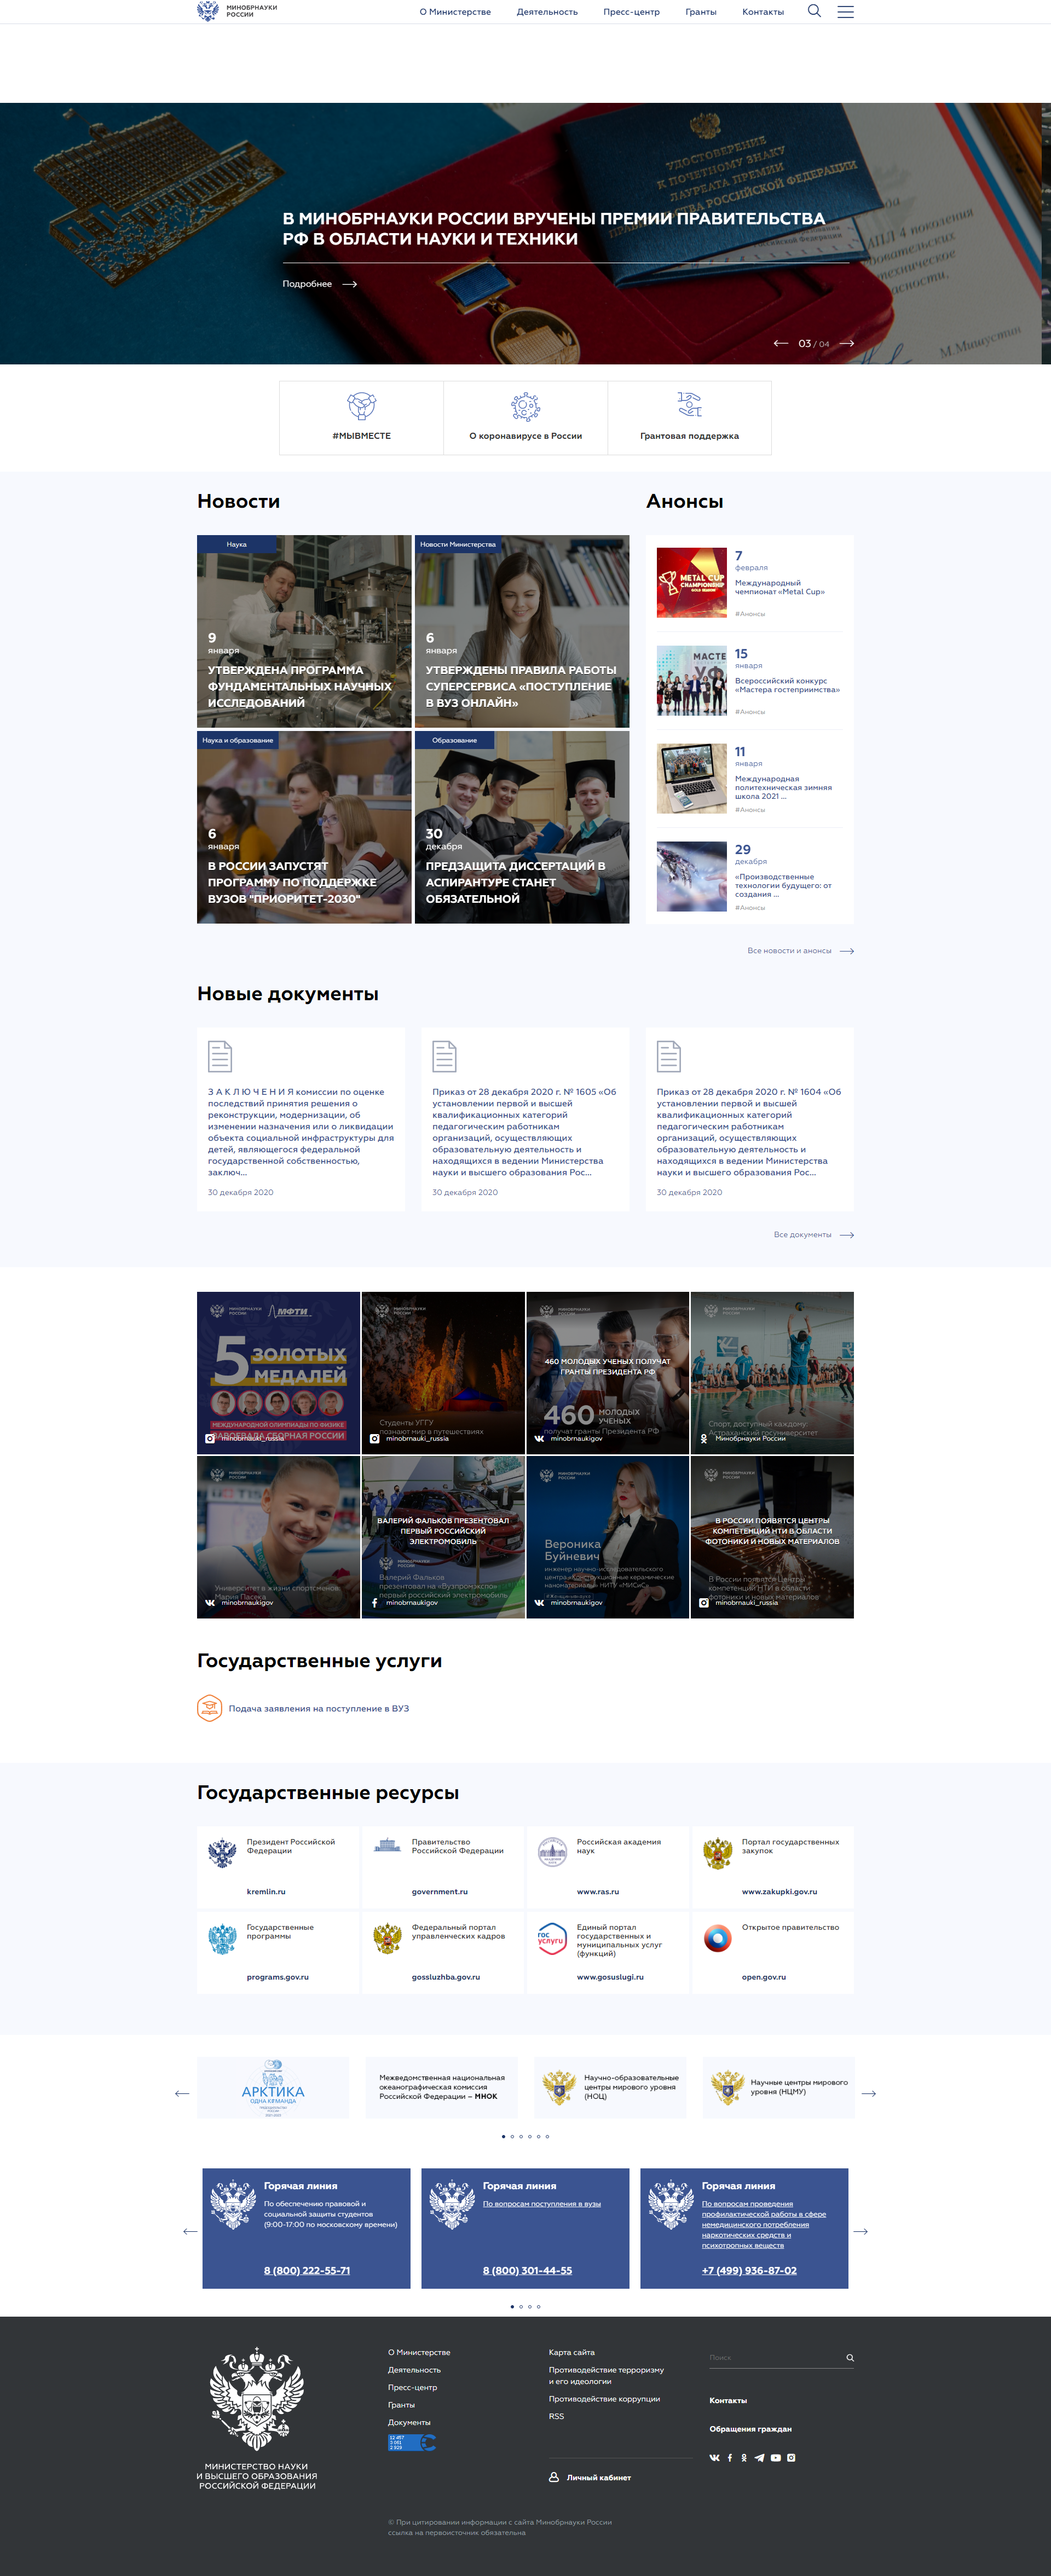 официальный сайт минобрнауки россии